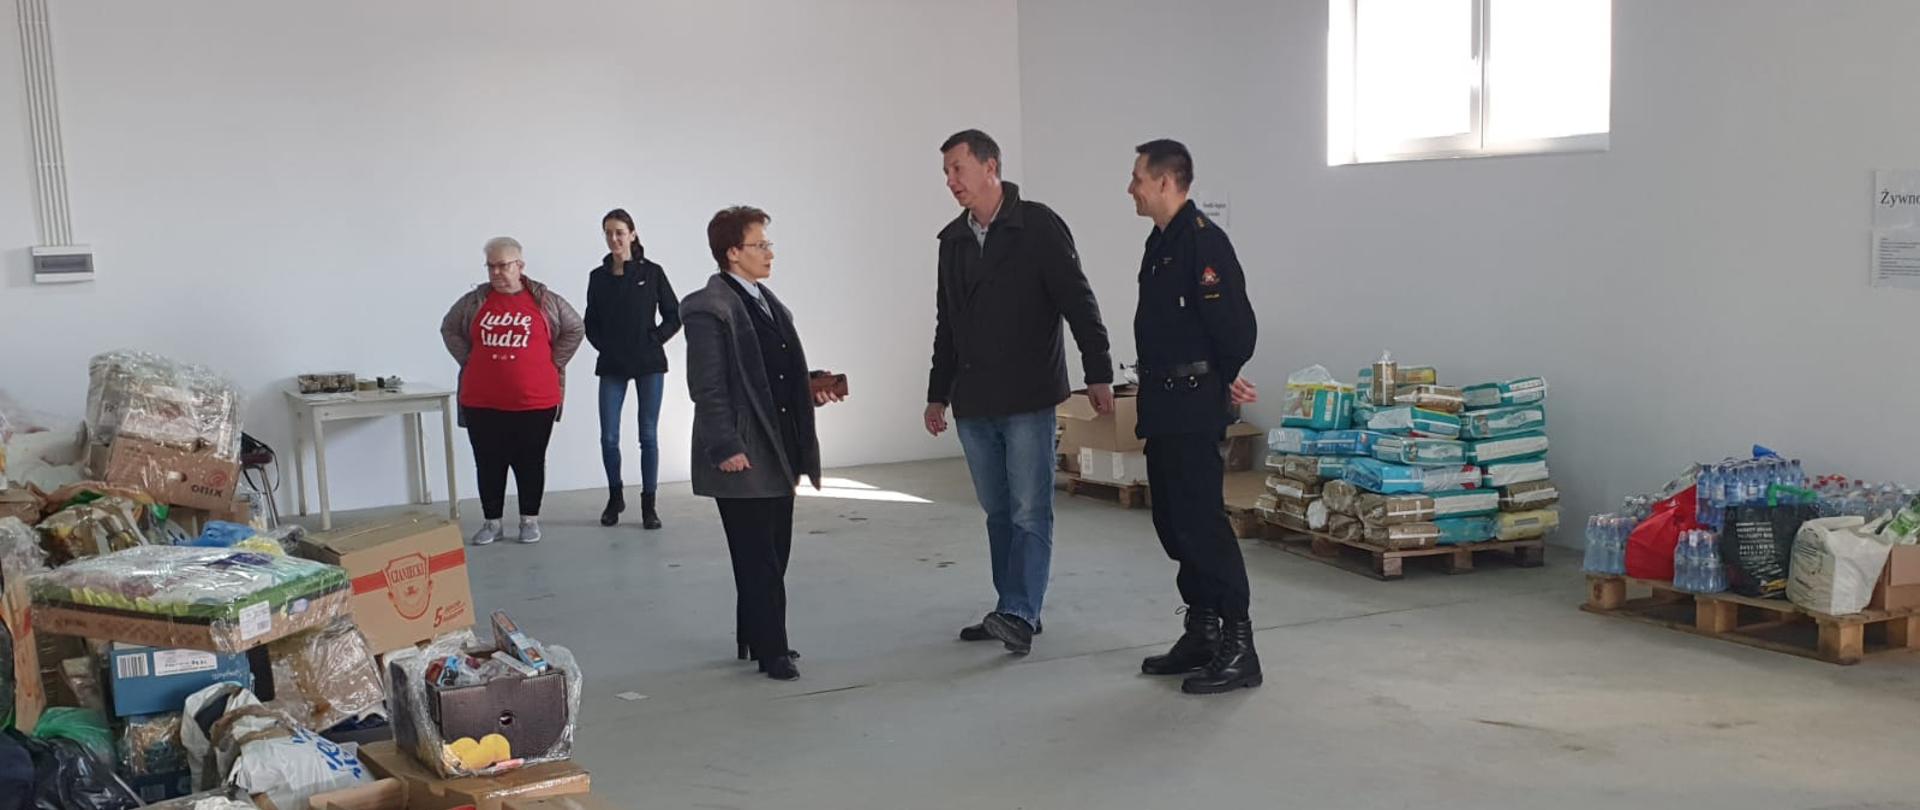 Na zdjęciu w powiatowym magazynie pomocy wewnątrz hali pomiędzy składowanymi na paletach darami dla obywateli Ukrainy widoczni starosta gorlicki i zastępca komendanta powiatowego PSP w Gorlicach oraz trzy osoby cywilne.